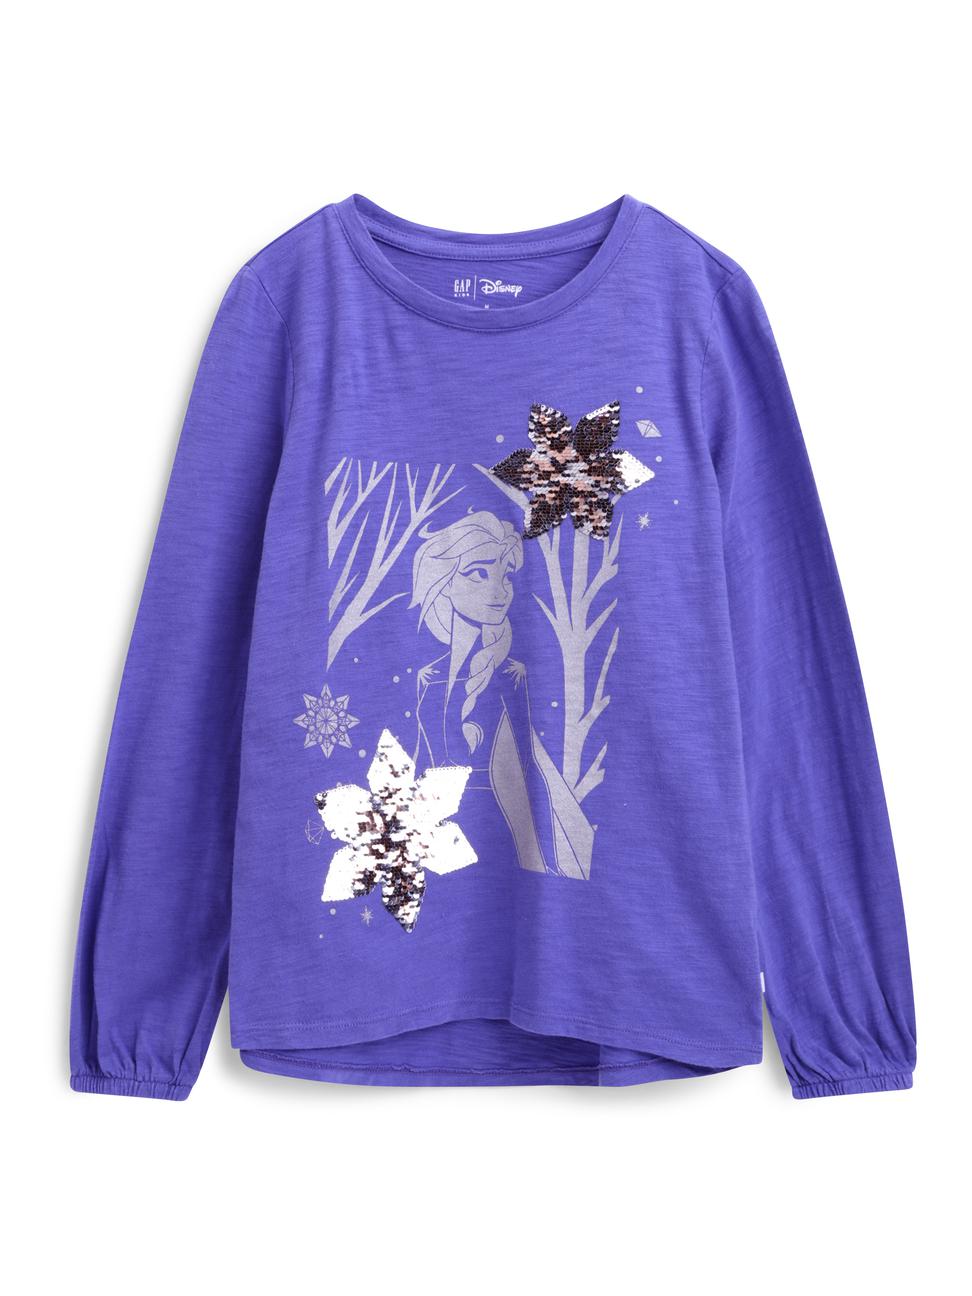 女童裝|Gap x Disney迪士尼聯名 冰雪奇緣圓領長袖T恤-藍紫色